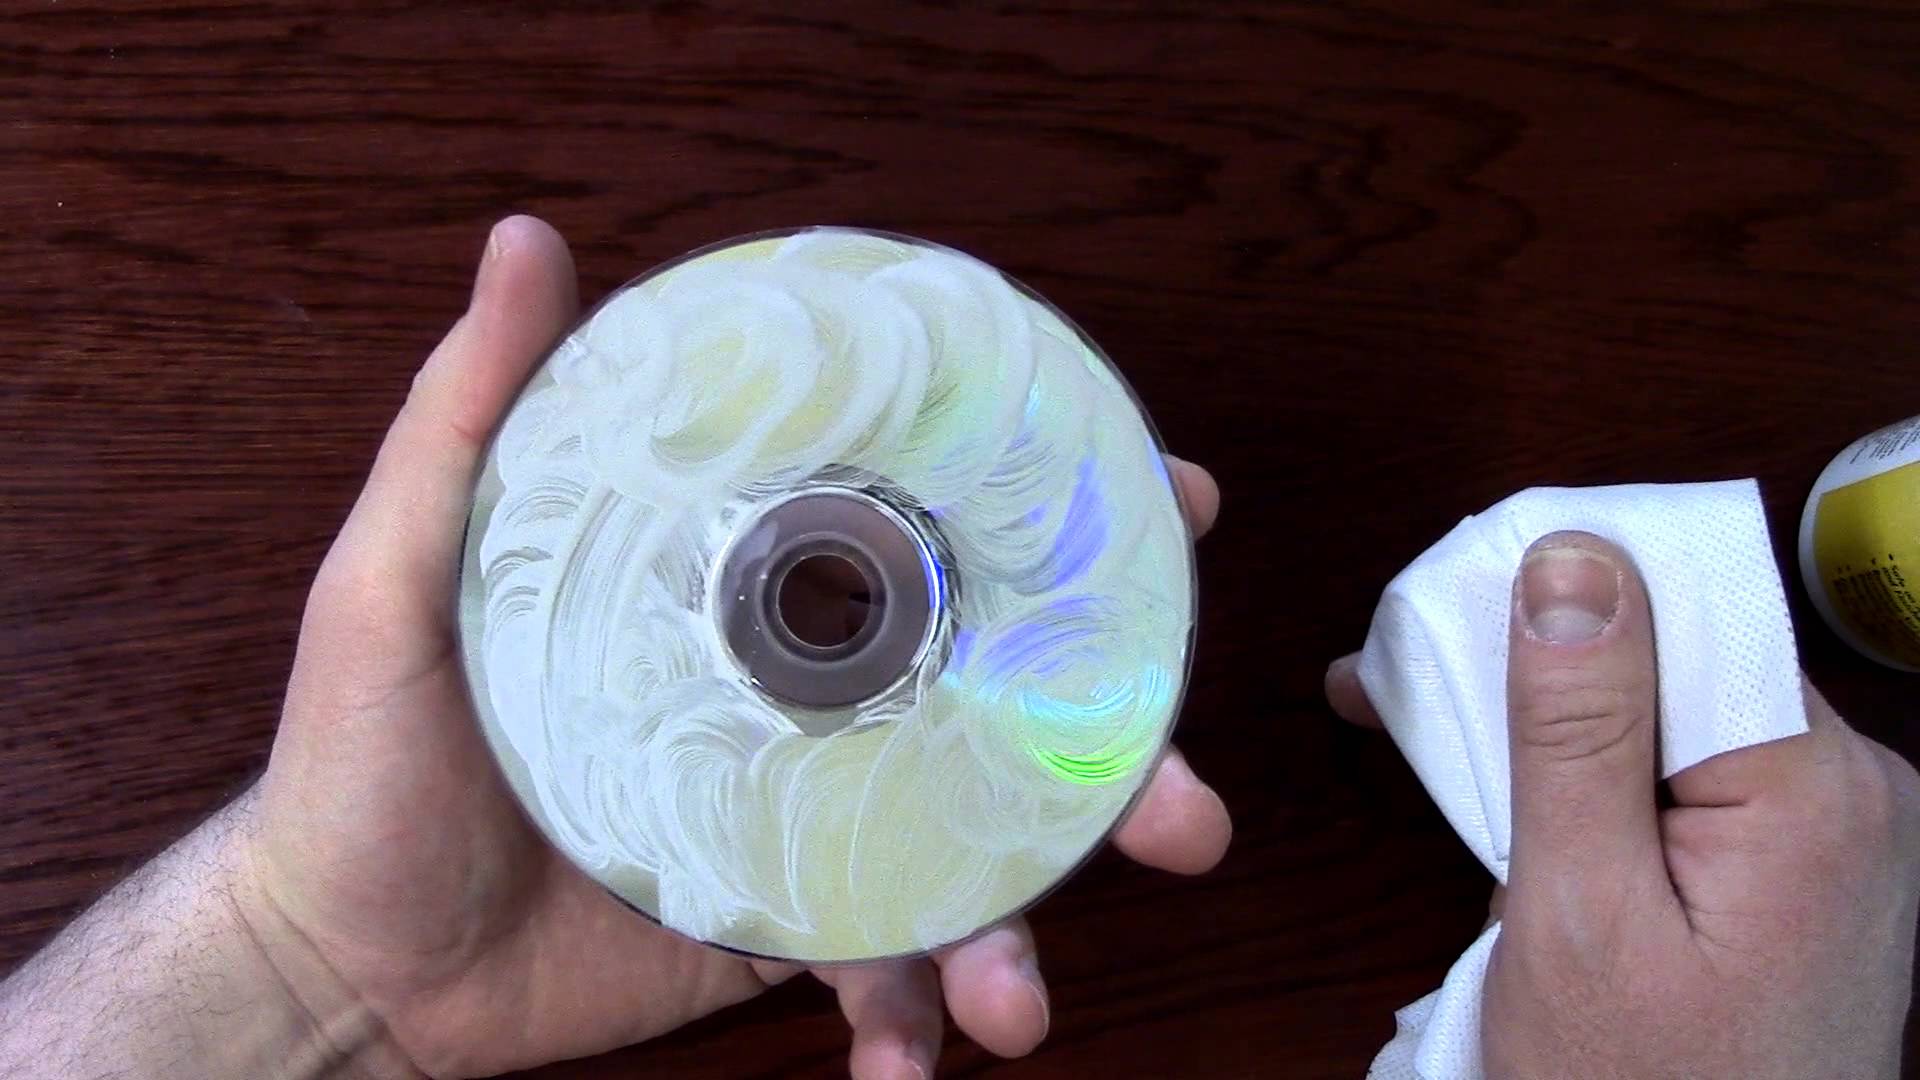 CD DVD Blu Ray or HD-DVD Disc Cleaner Scratch Repair Machine